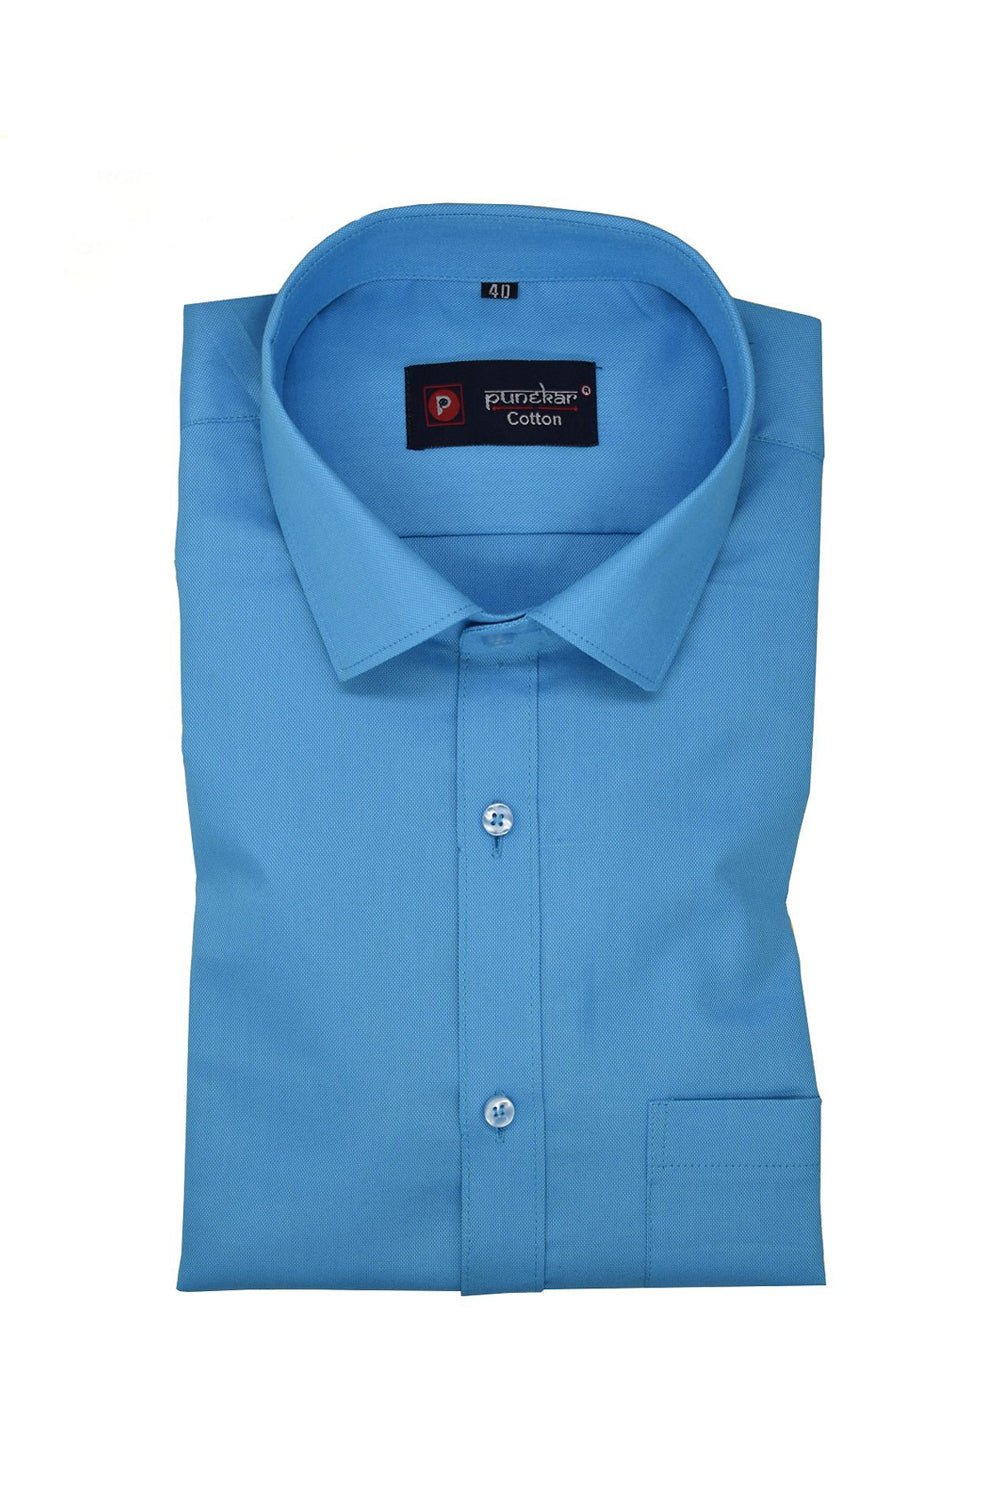 Punekar Cotton Blue Color Rich Cotton Formal Shirt For Men's - Punekar Cotton